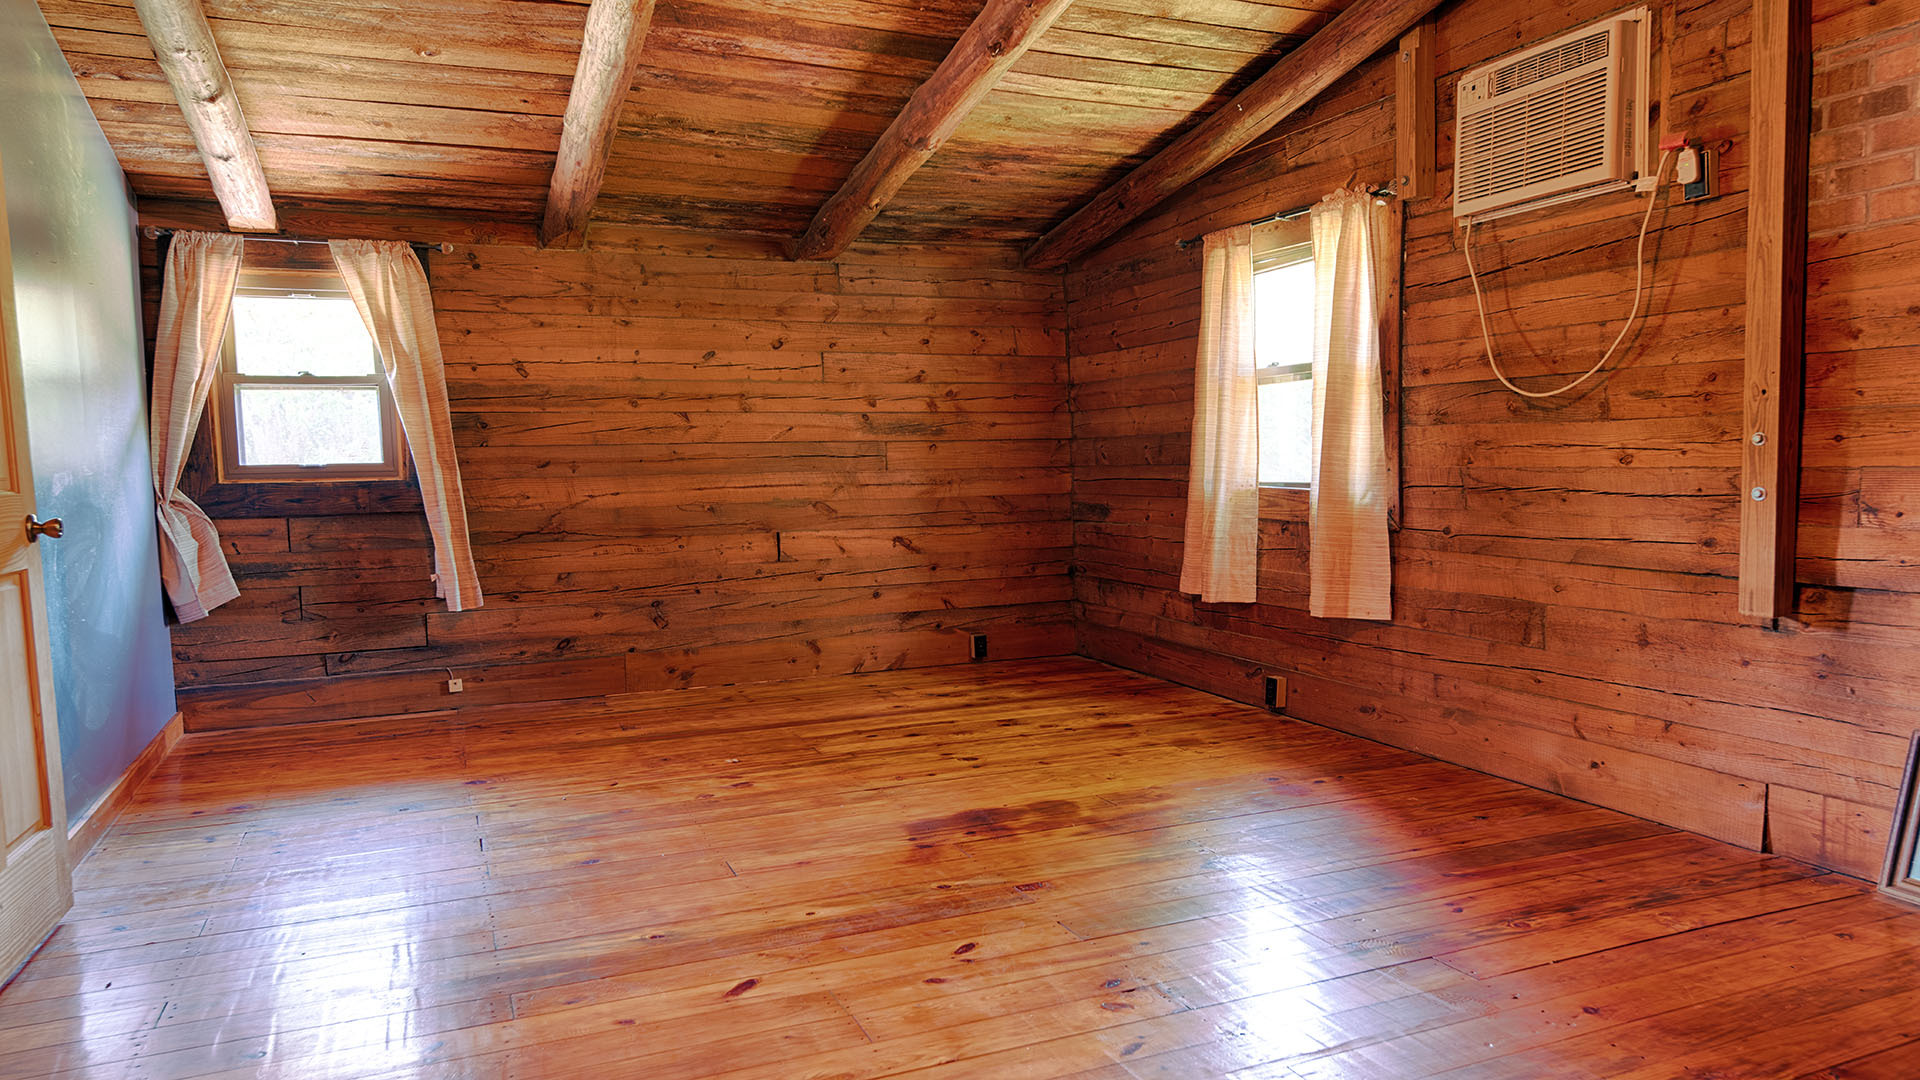  Log Cabin for Sale in VA